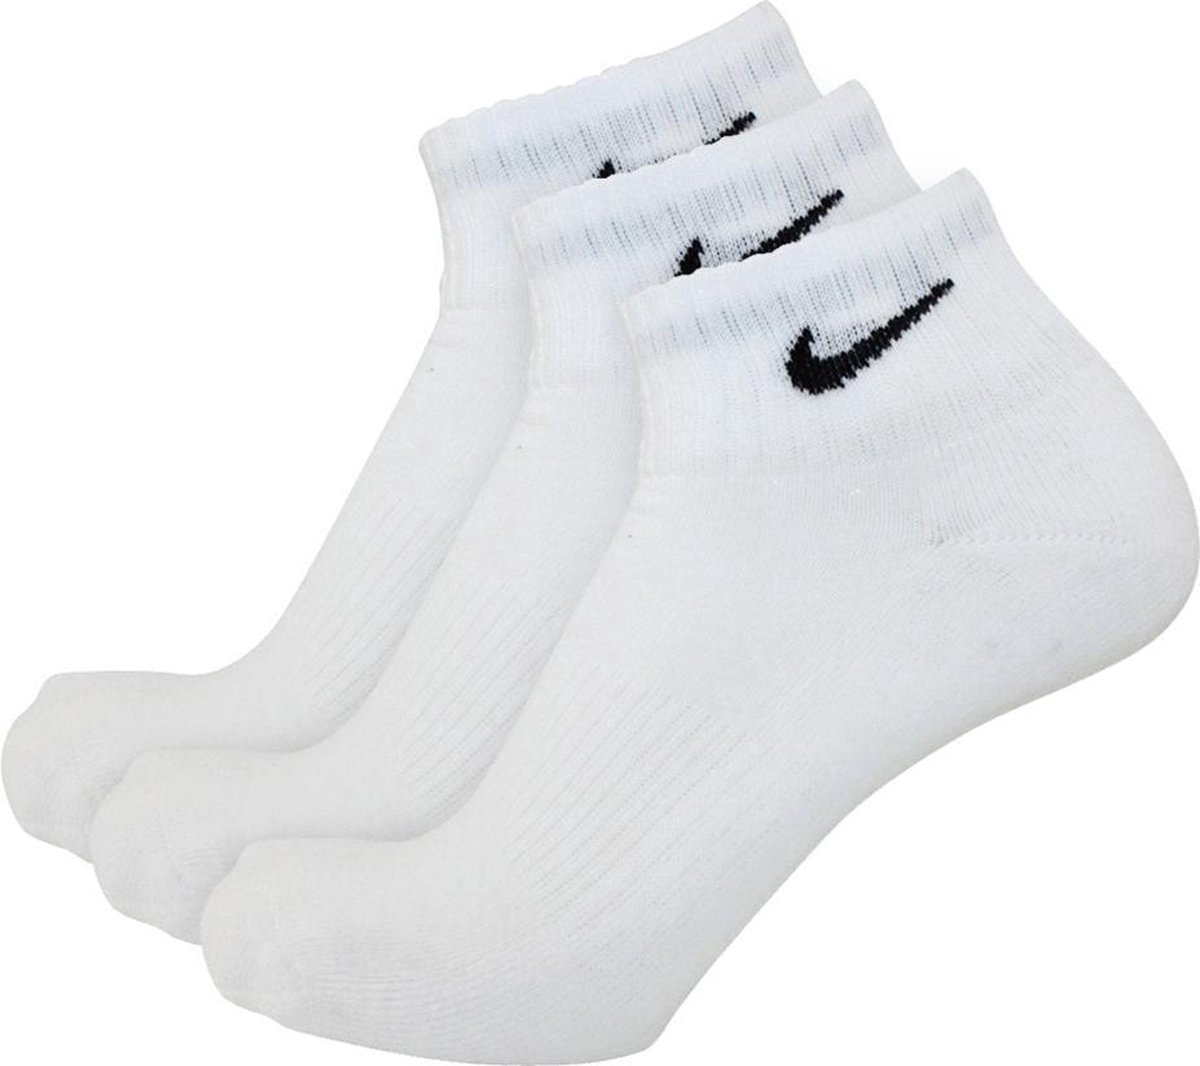 Nike sokken half hoog 3 paar wit-46/50 | bol